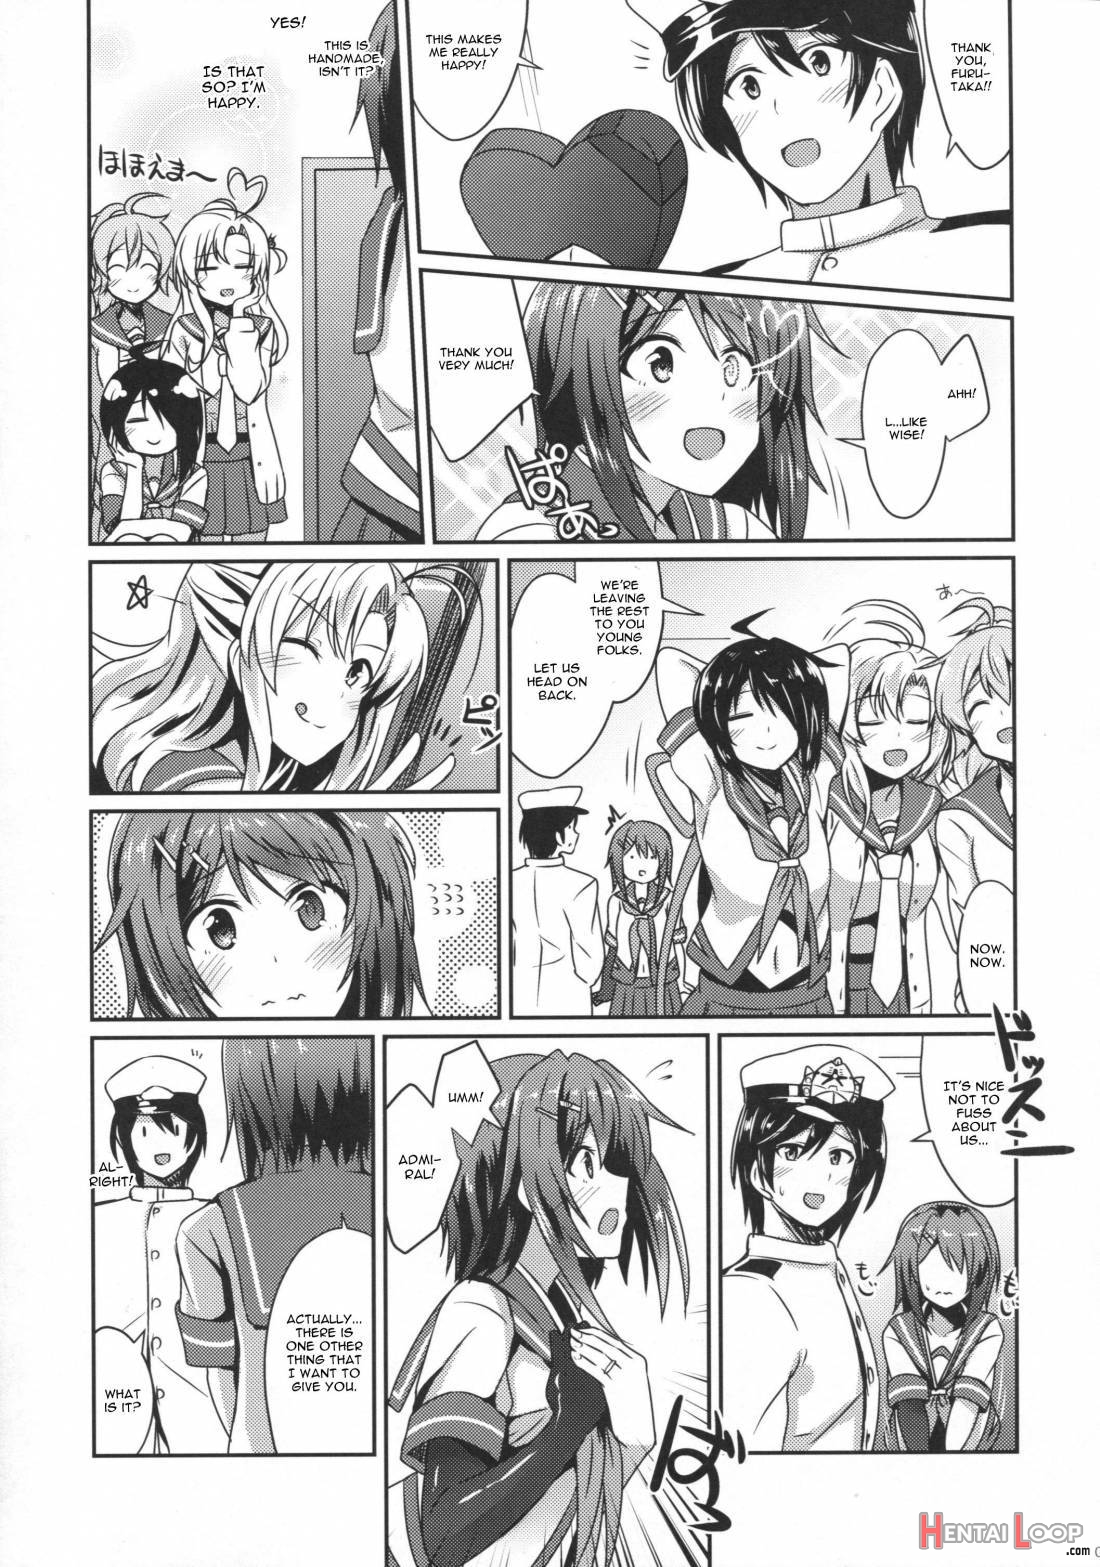 Furutaka wo meshiagare page 4